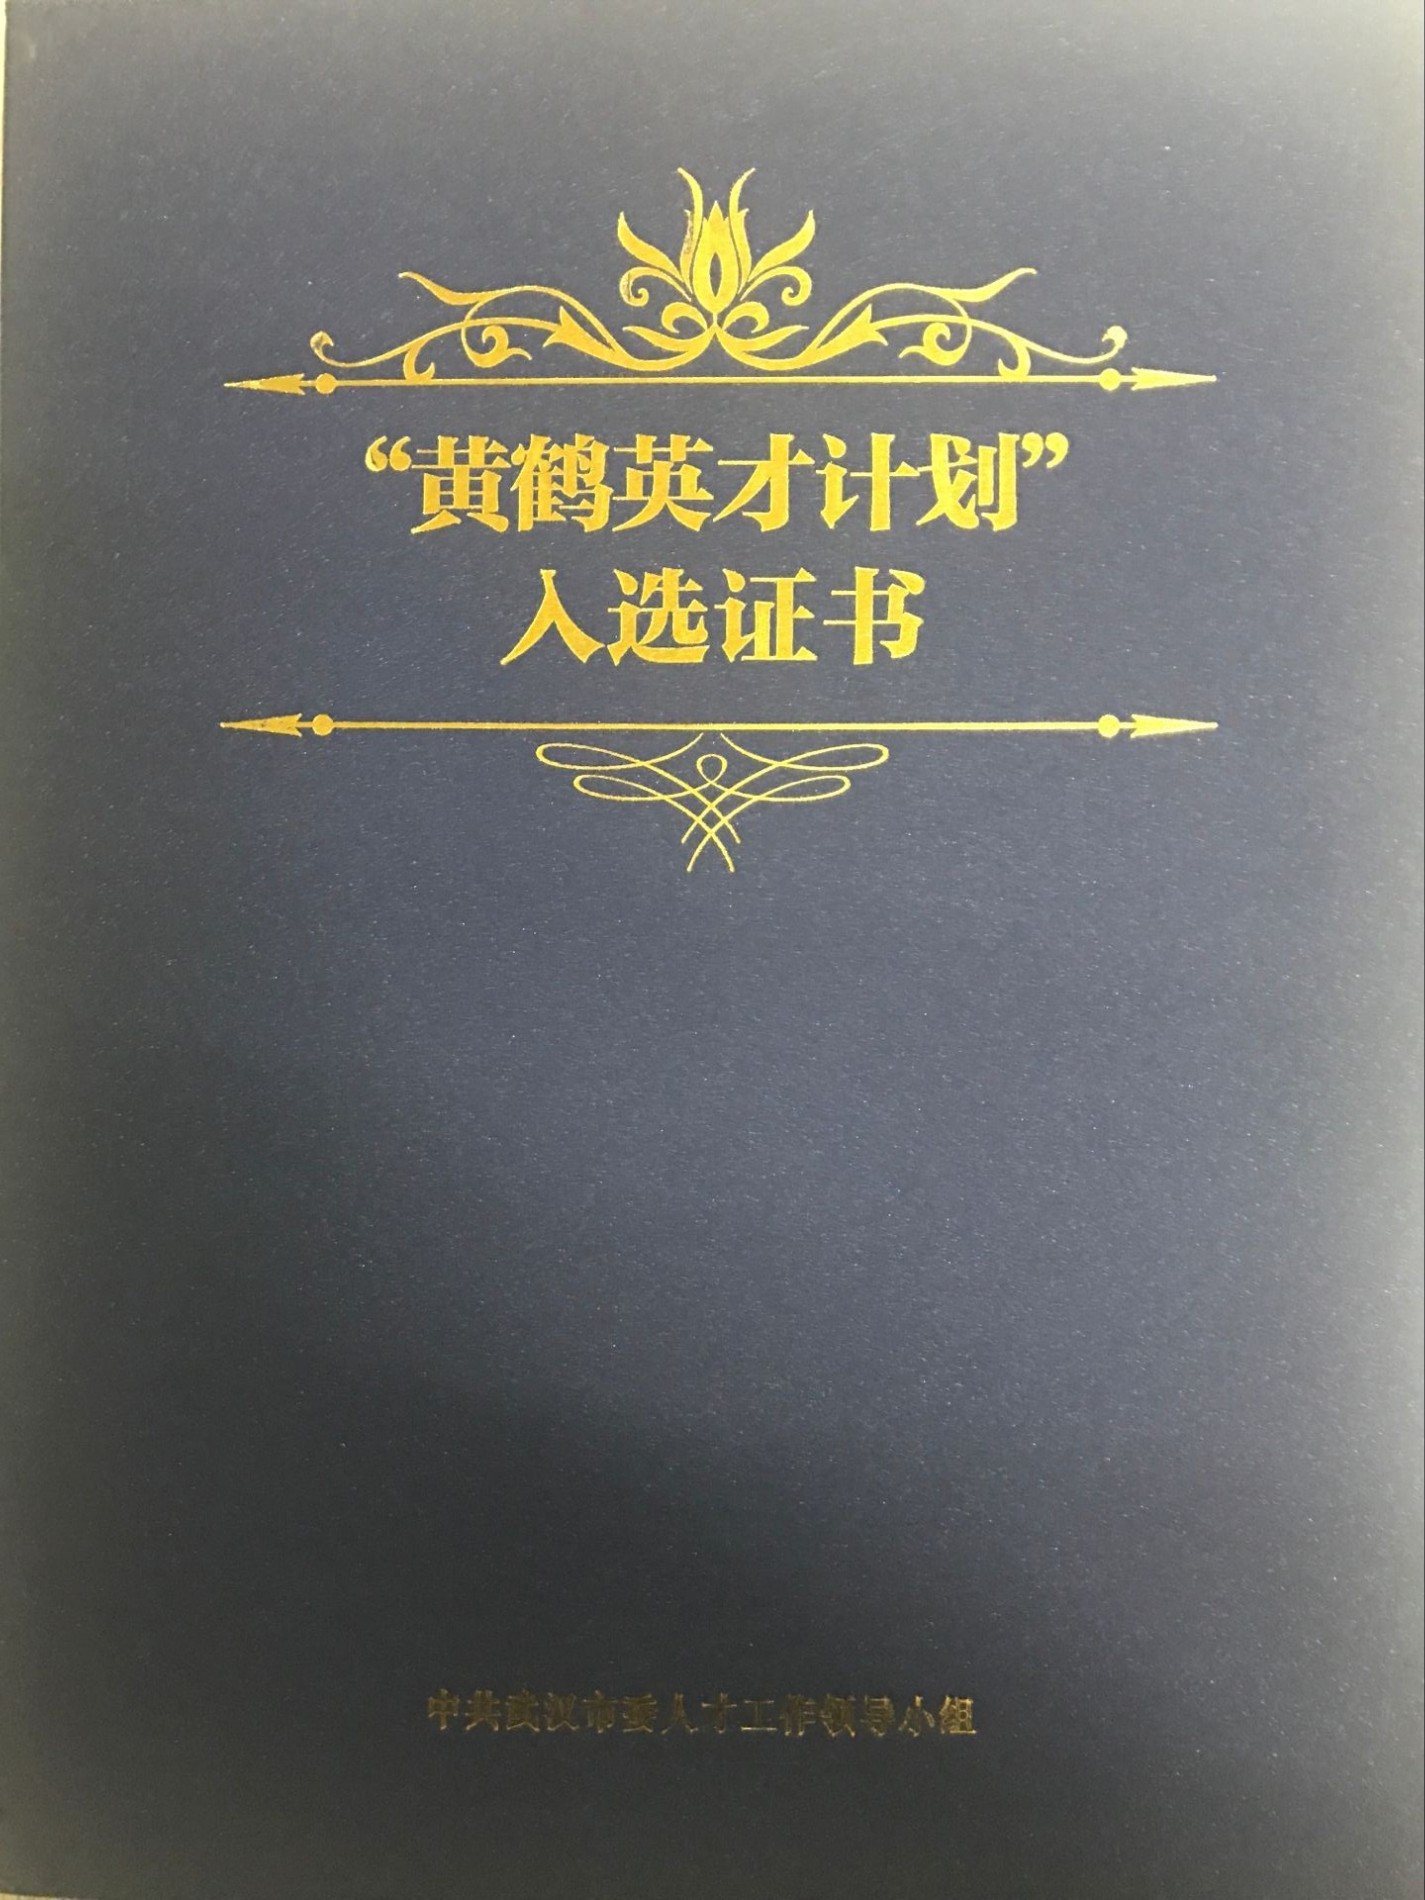 Huanghe Yingcai Schemat certyfikatu